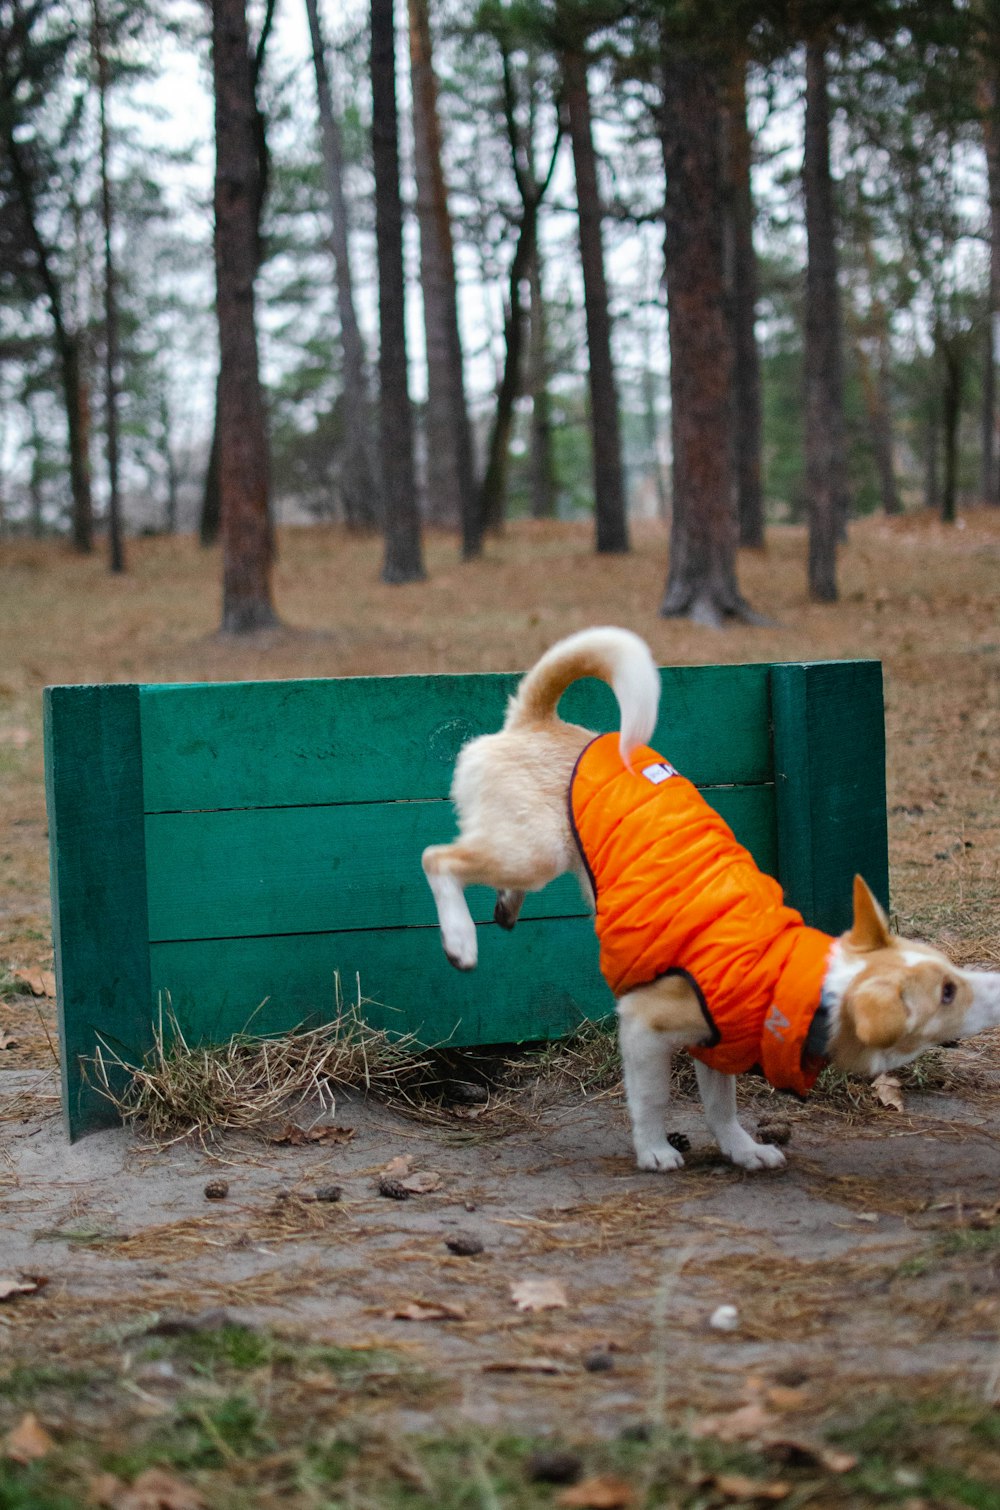 Ein kleiner Hund in einem orangefarbenen Hemd spielt mit einem anderen Hund